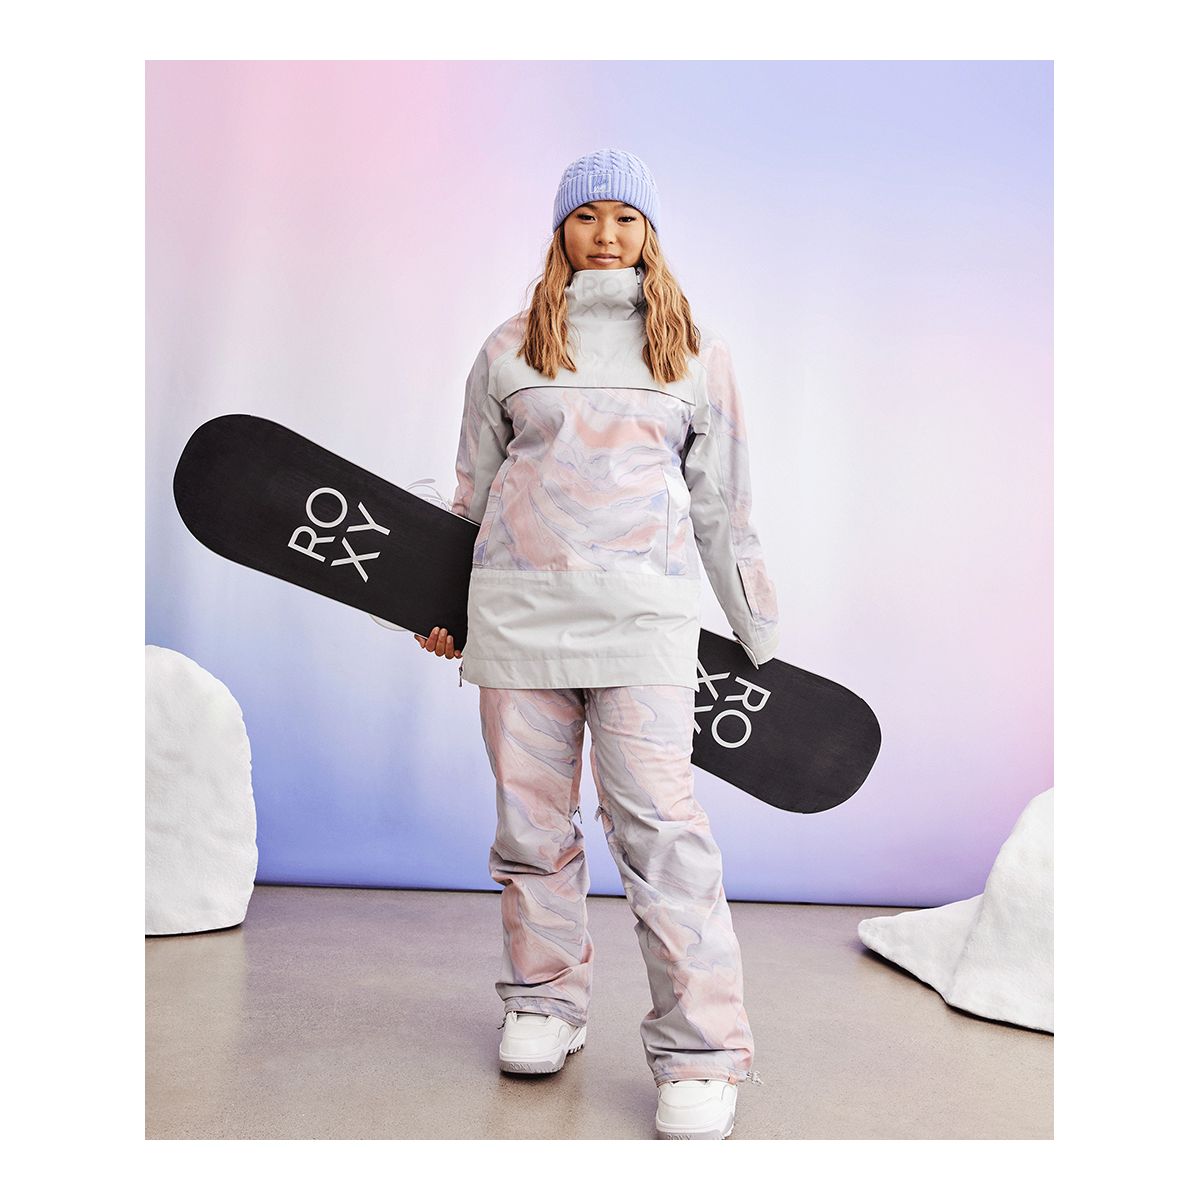 Roxy Women's Jet Ski Winter Ski Jacket, Insulated, Hooded, Waterproof